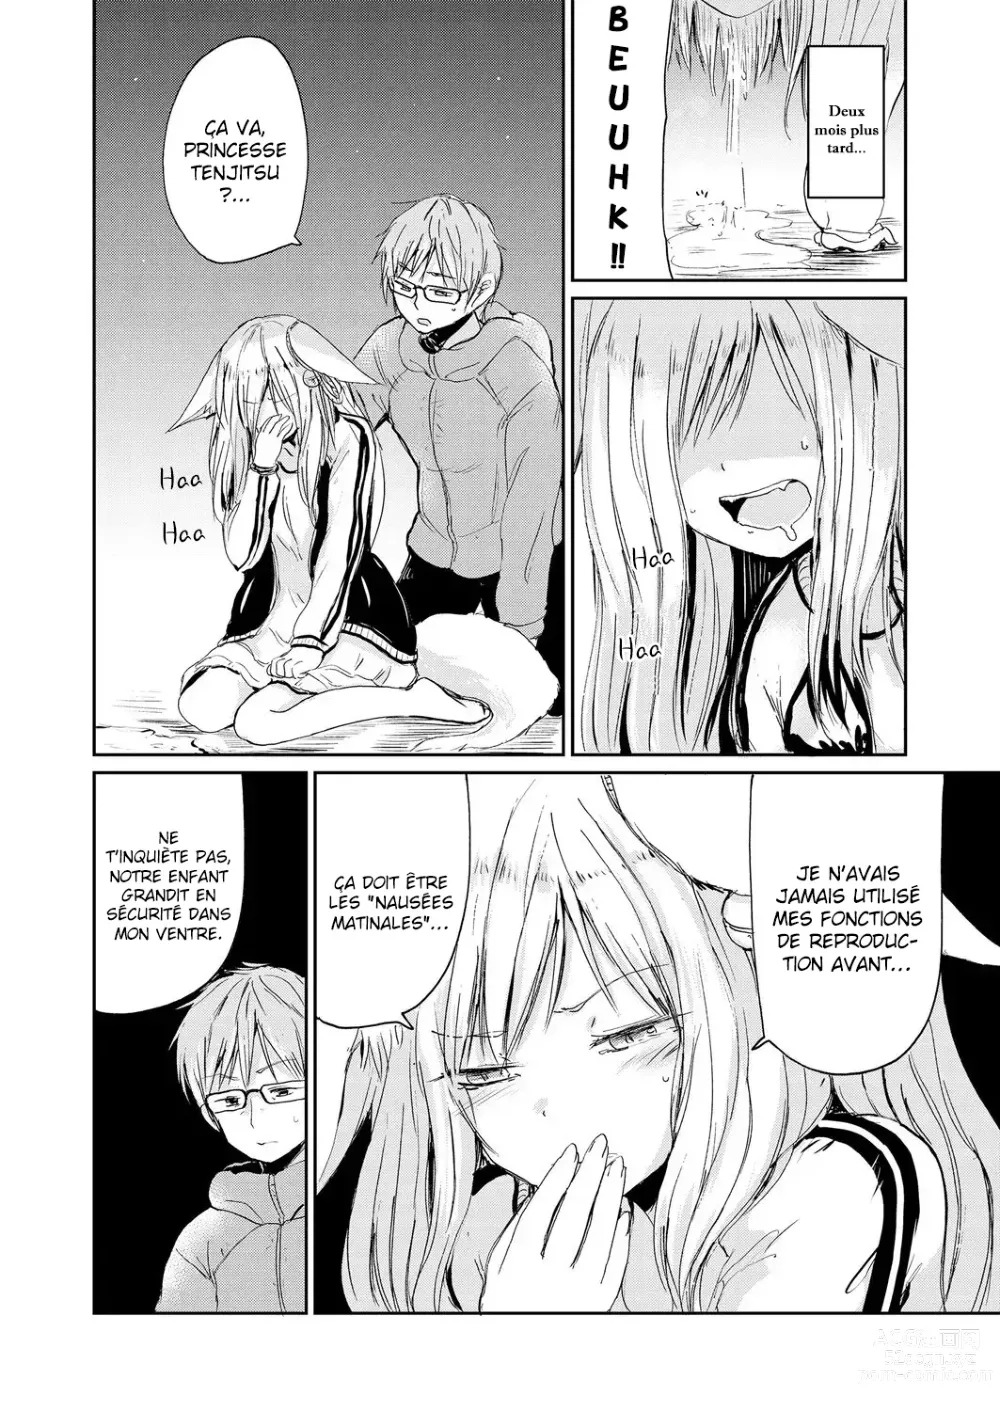 Page 18 of manga La déesse renarde et moi